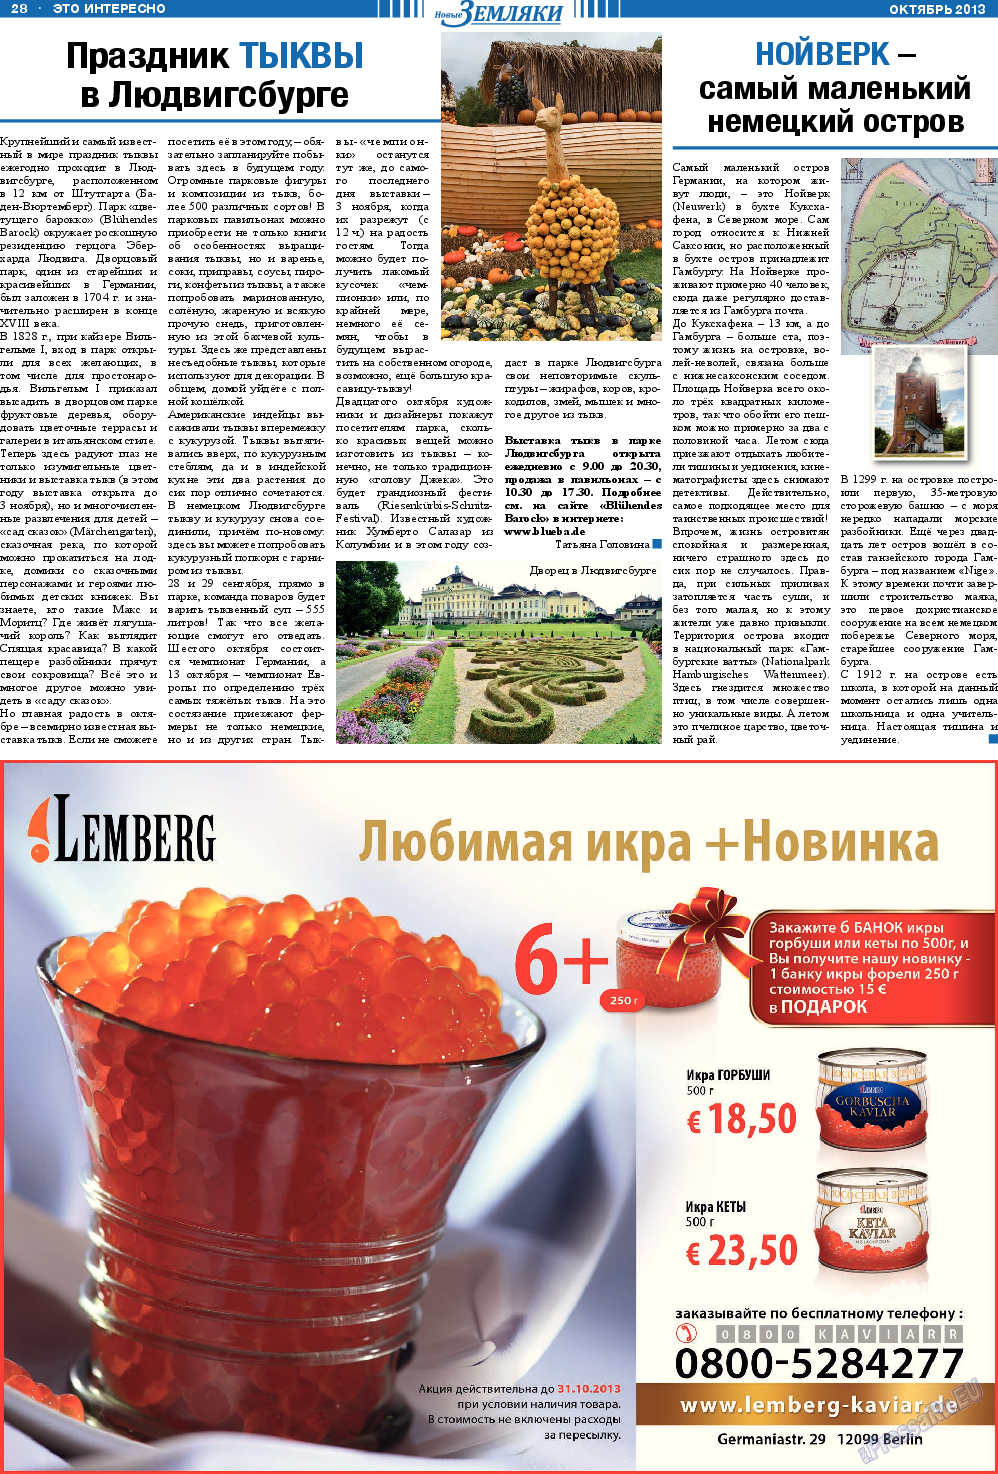 Новые Земляки, газета. 2013 №10 стр.28